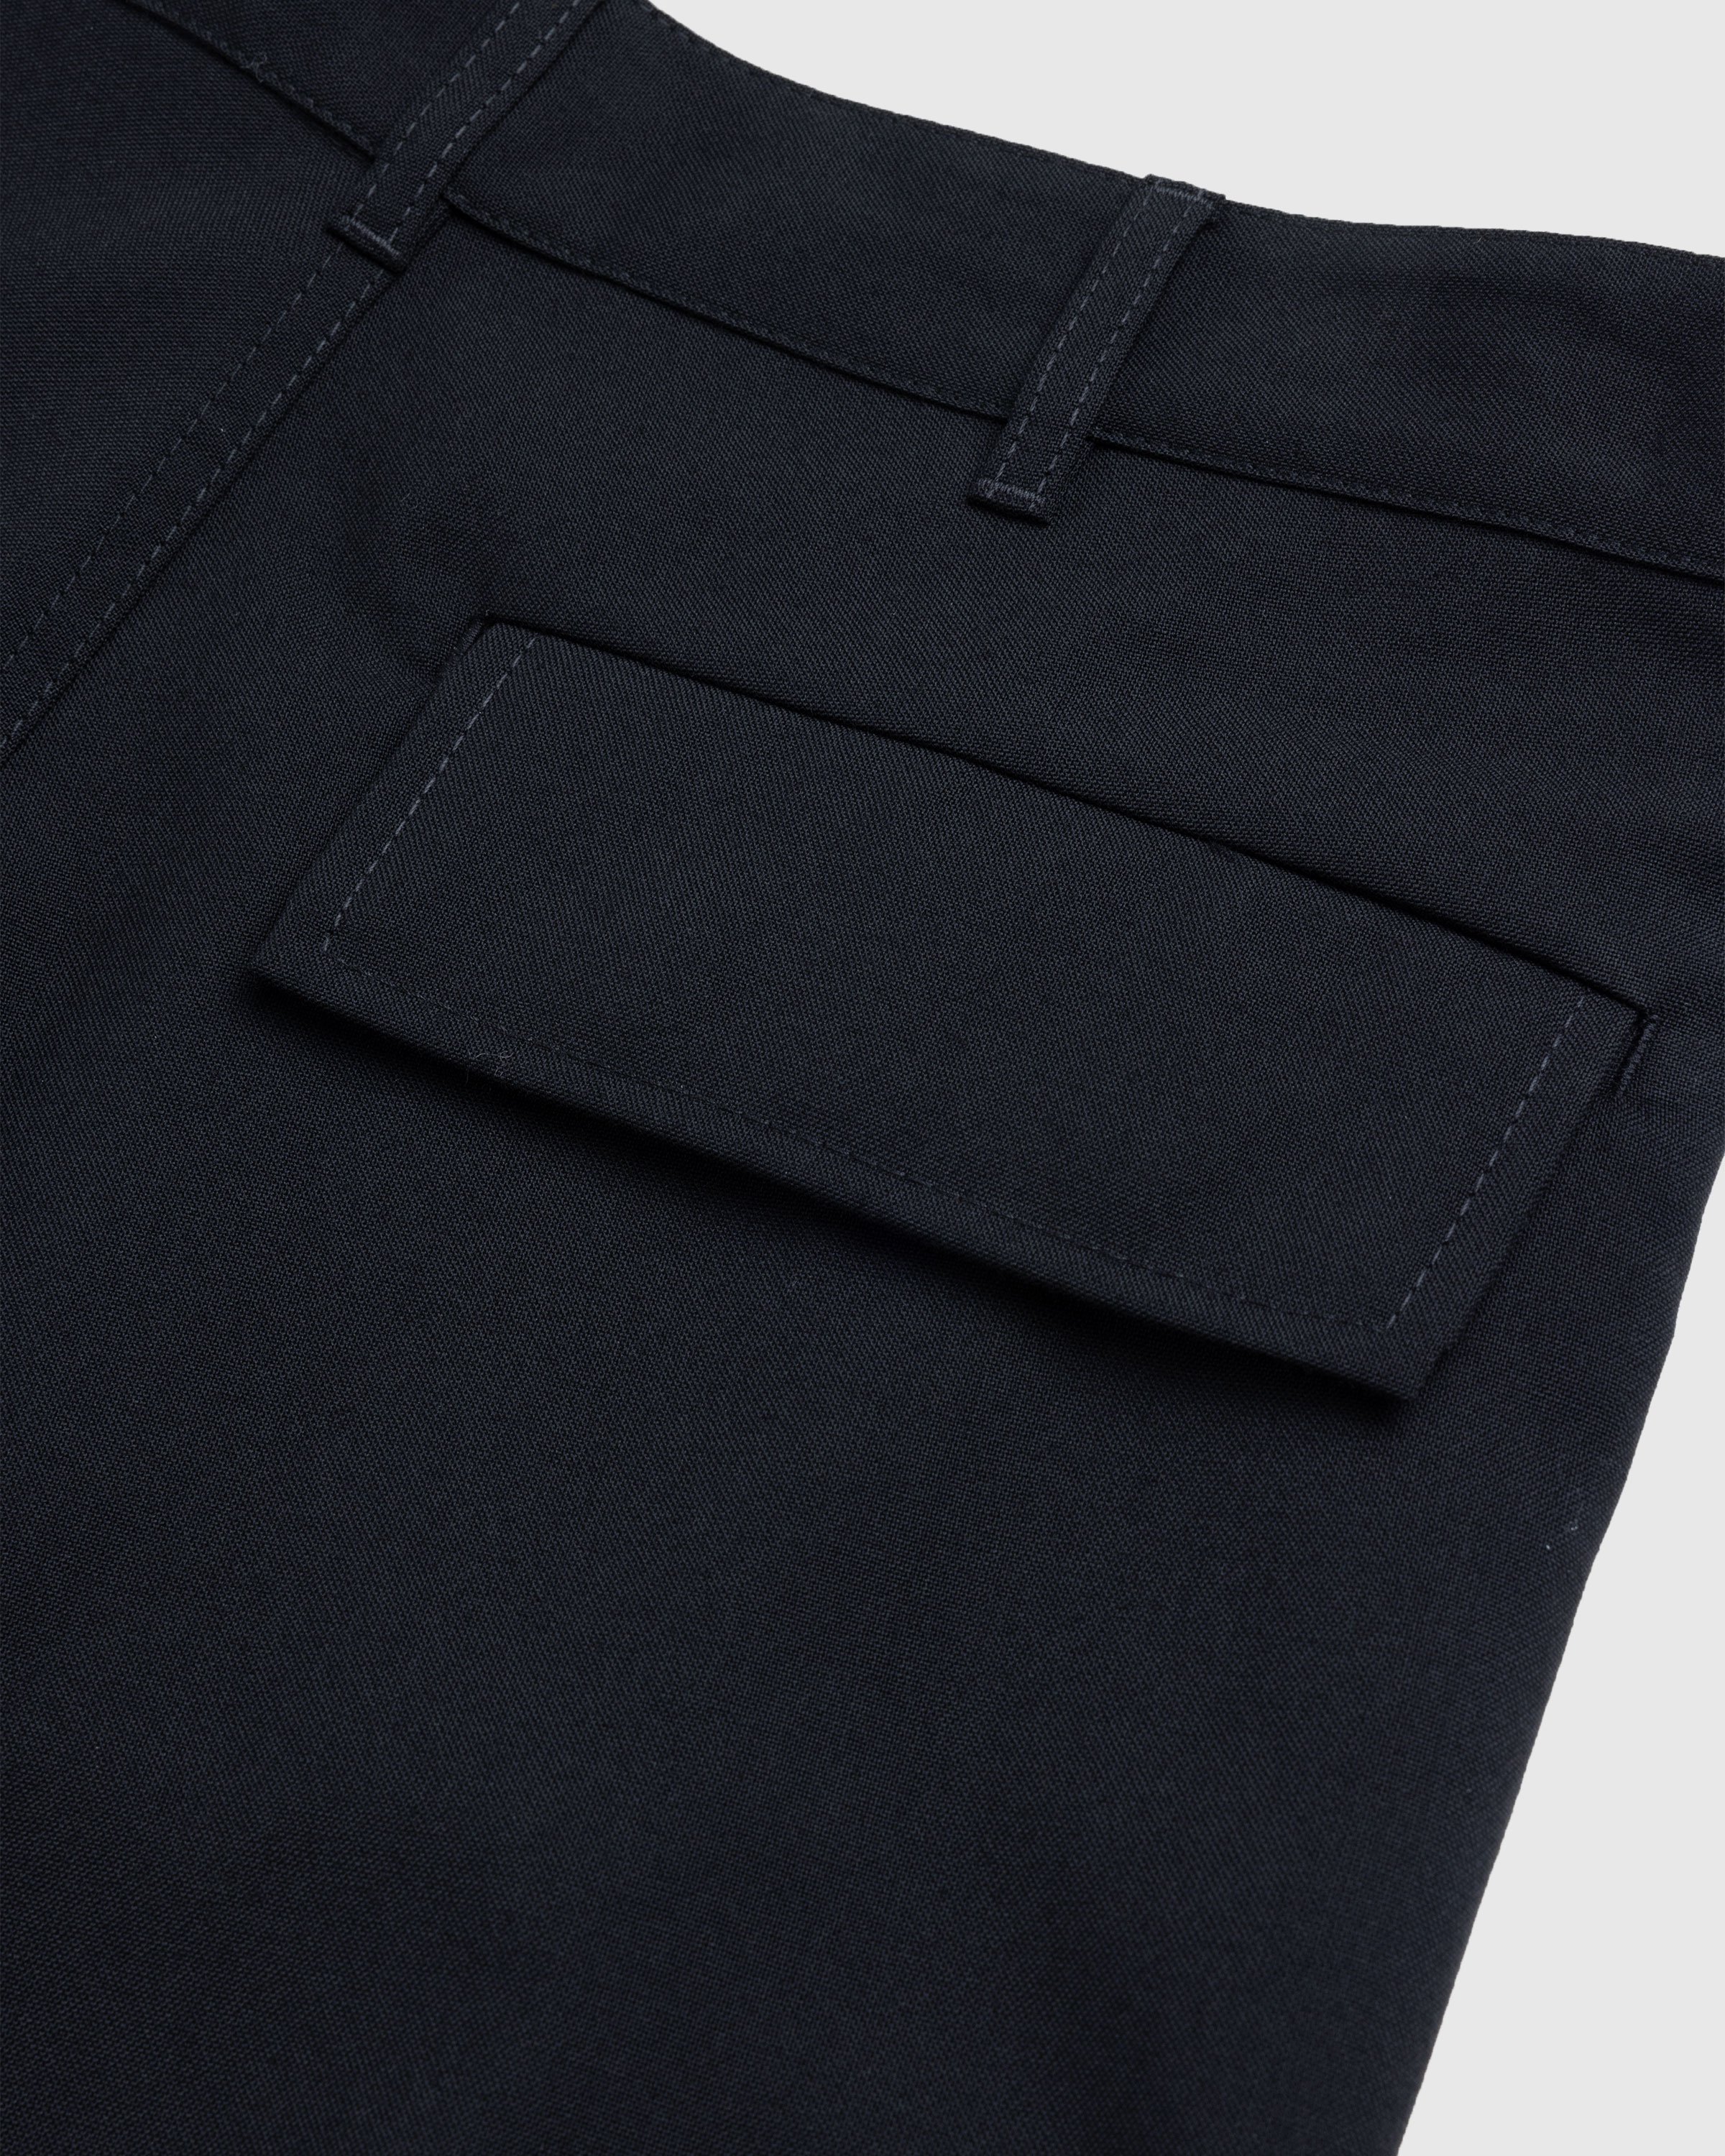 Marni - Cargo Pocket Wool Trousers Black - Clothing - Black - Image 4